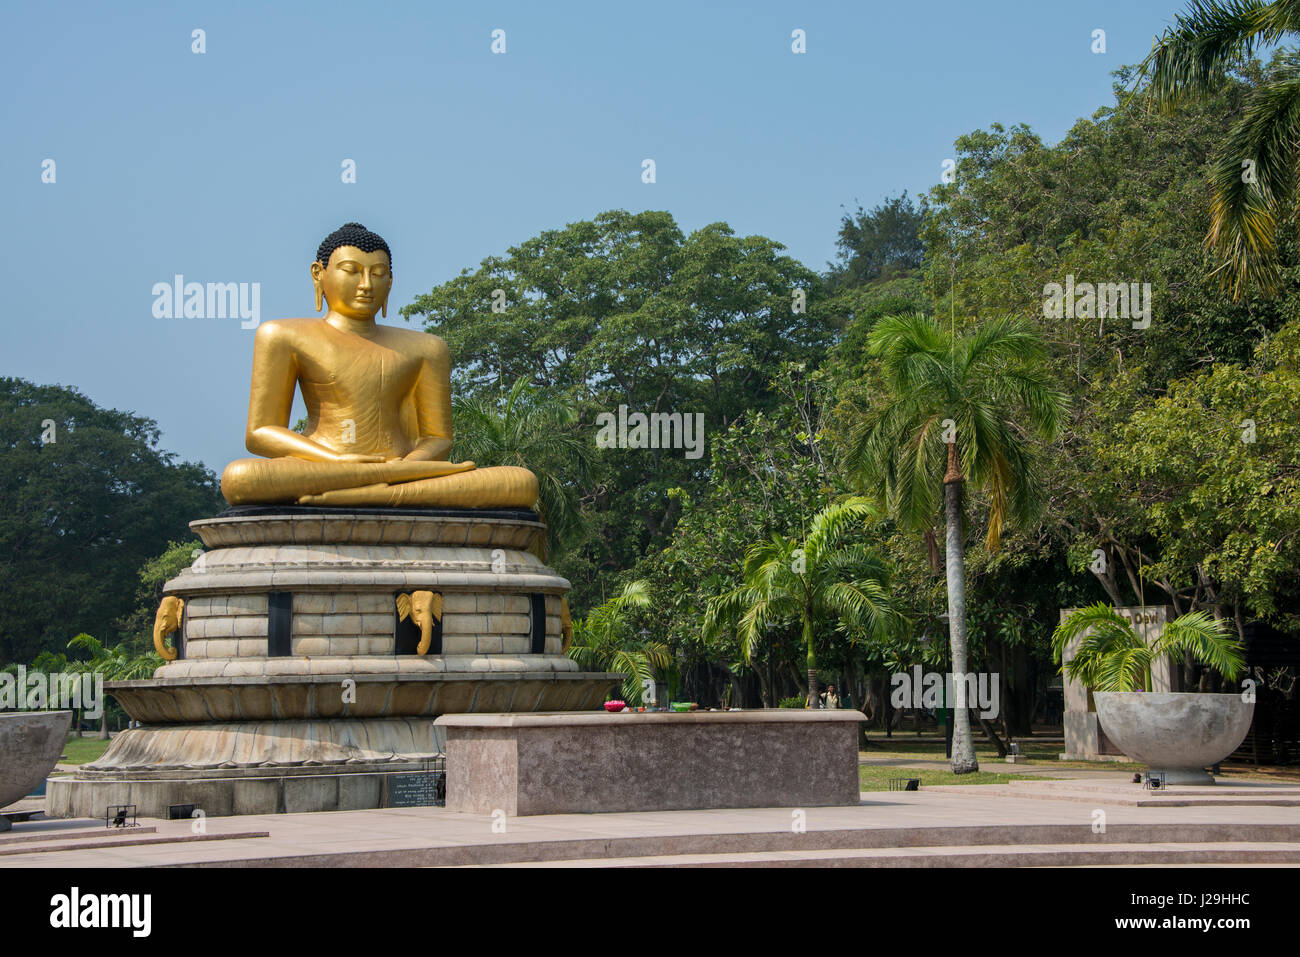 Sri Lanka, Colombo, Viharamahadevi Park (formerly Victoria Park) is a ...